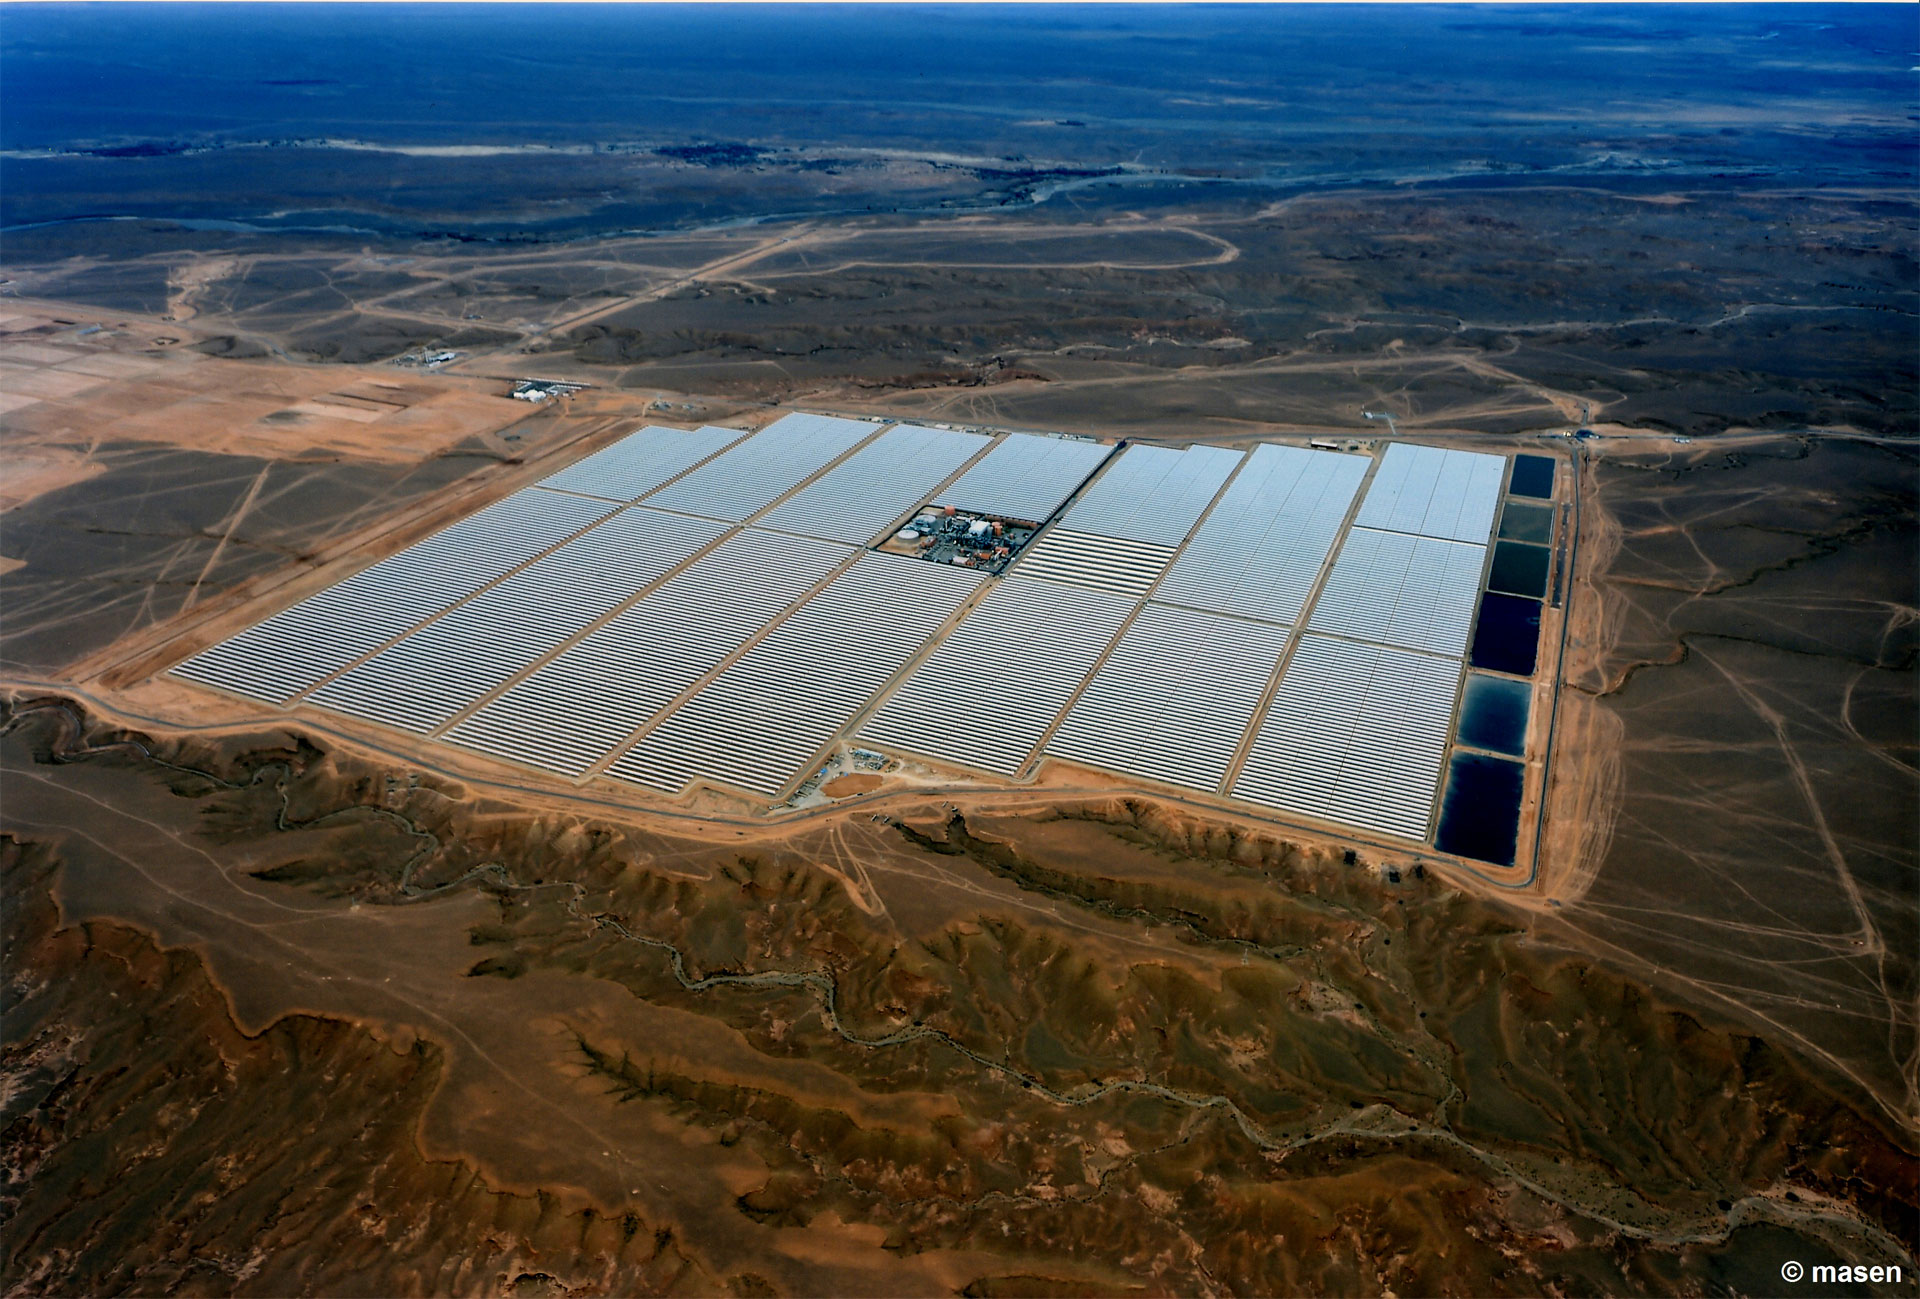 Luftaufnahme eines großen Solarparks mit Reihen von Photovoltaikpaneelen, umgeben von trockenem Gelände